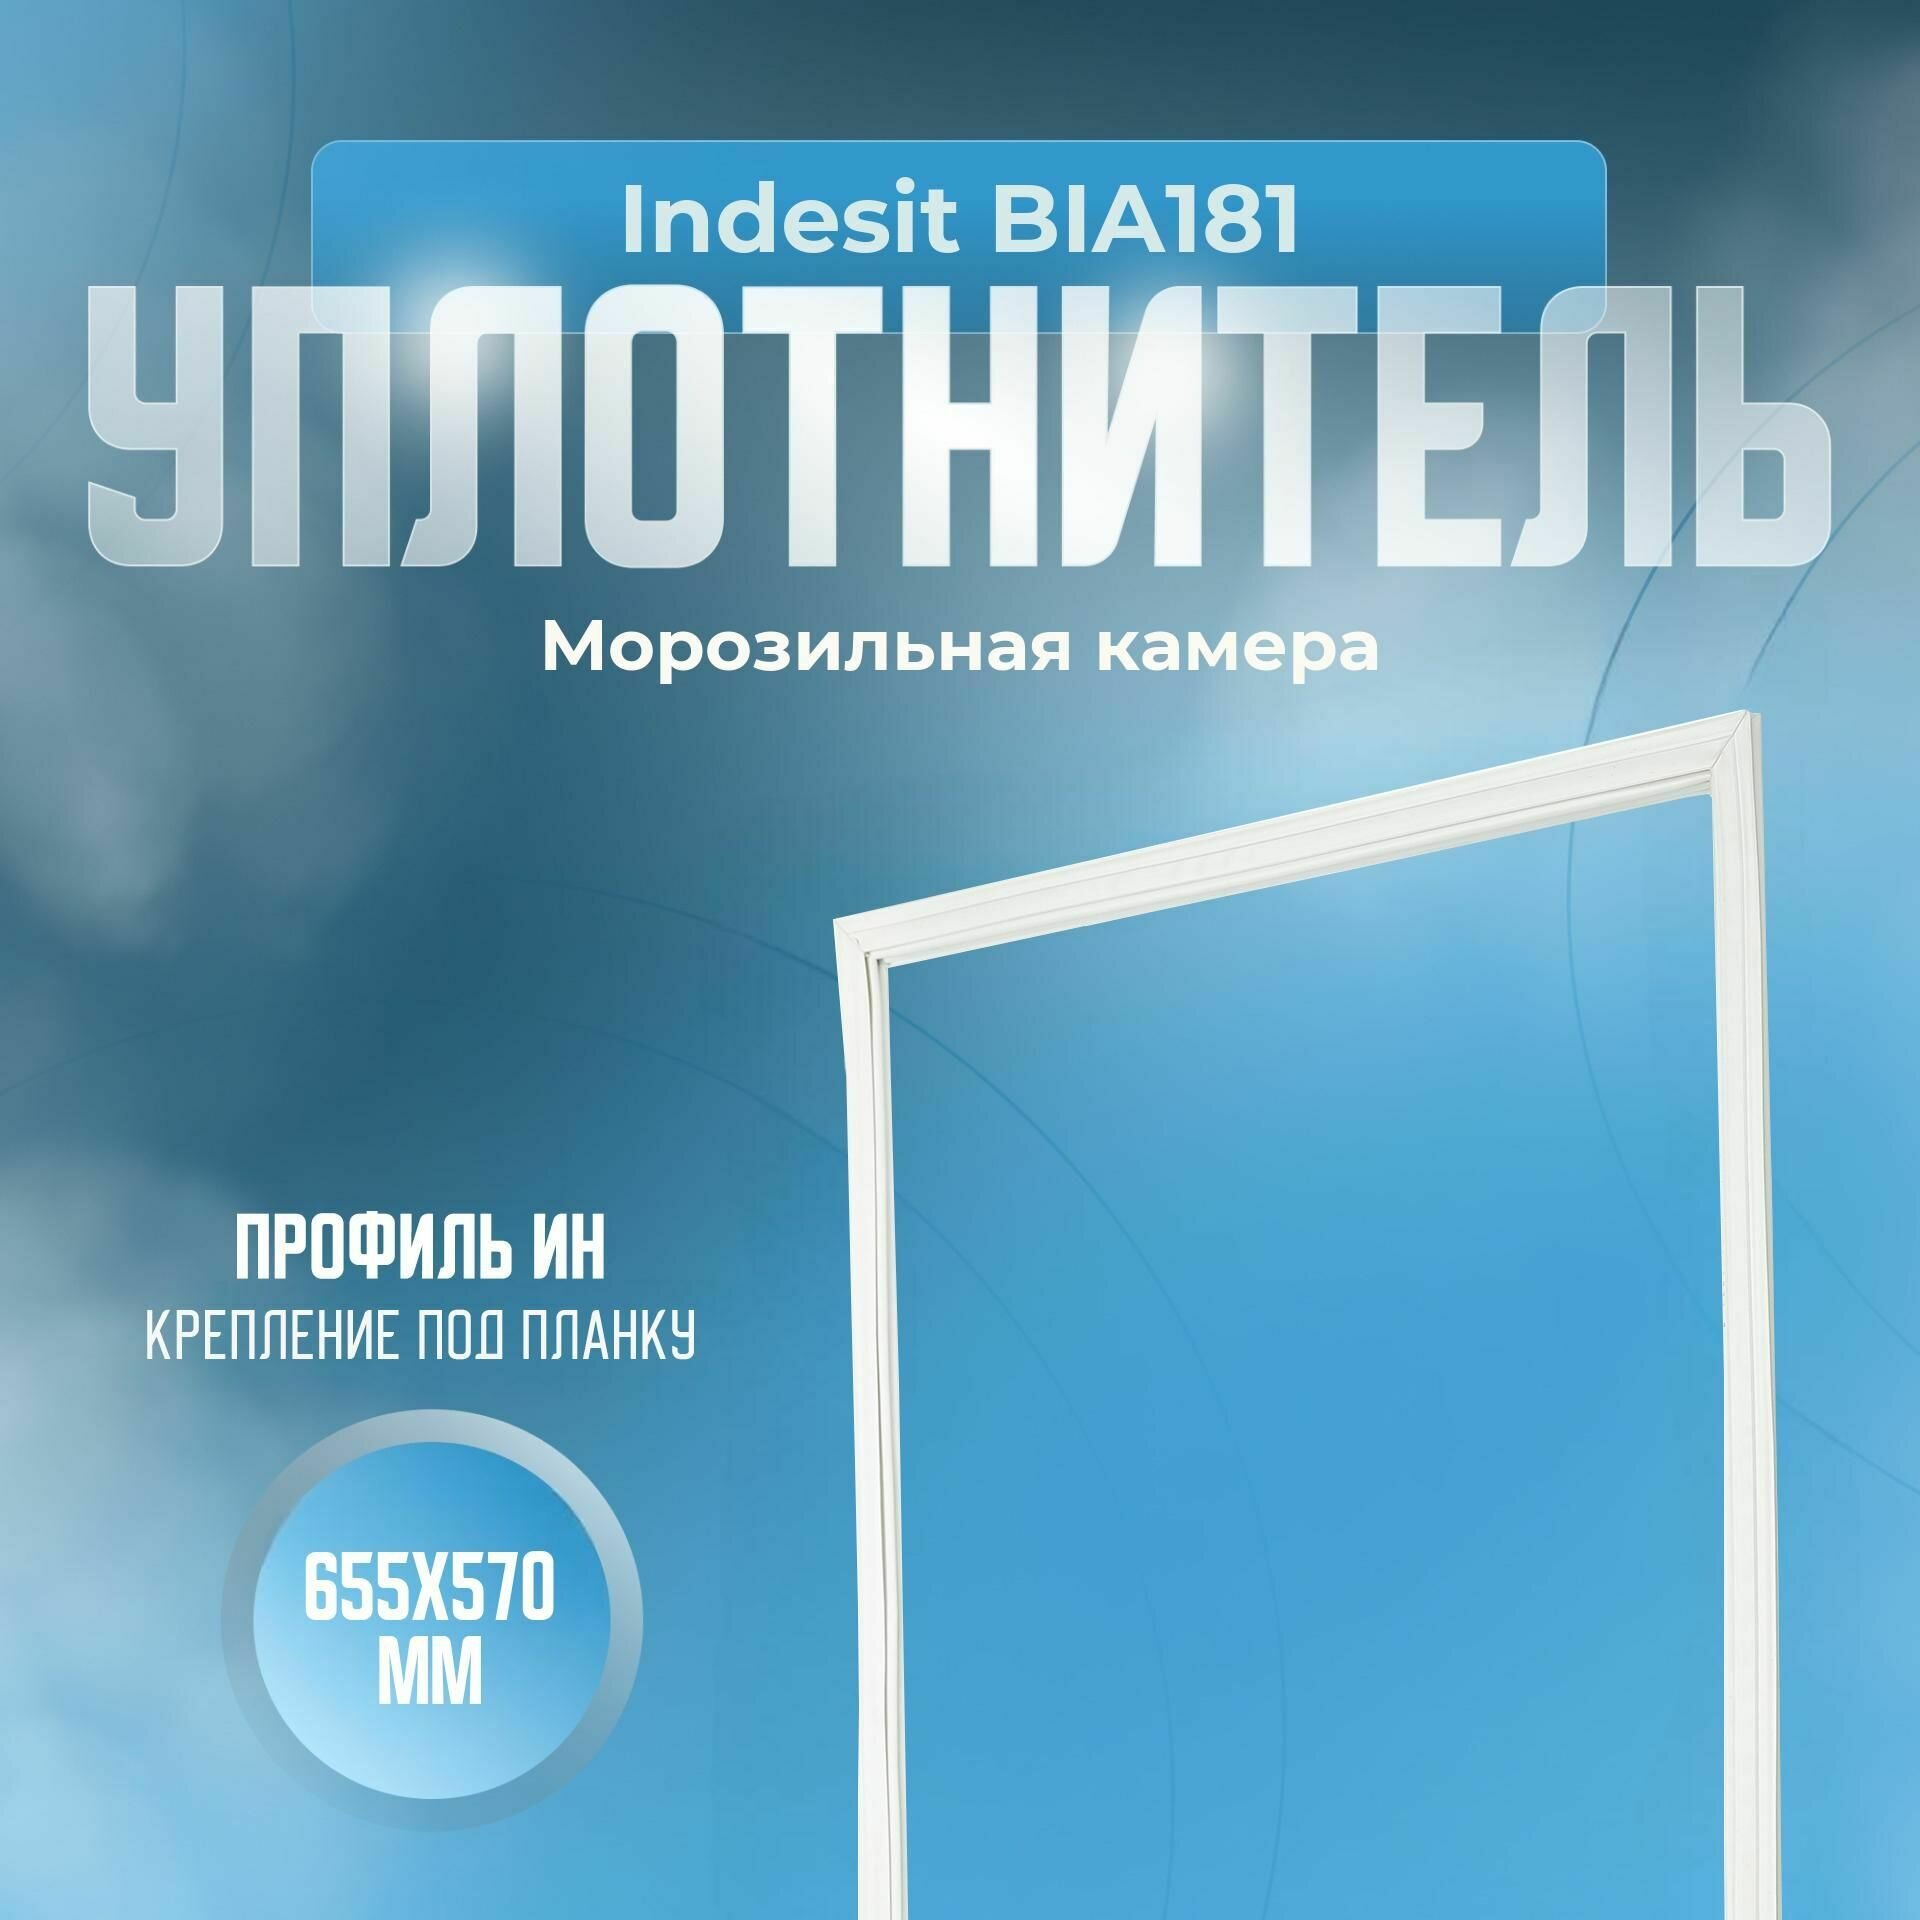 Уплотнитель Indesit BIA181. м. к, Размер - 655x570 мм. ИН